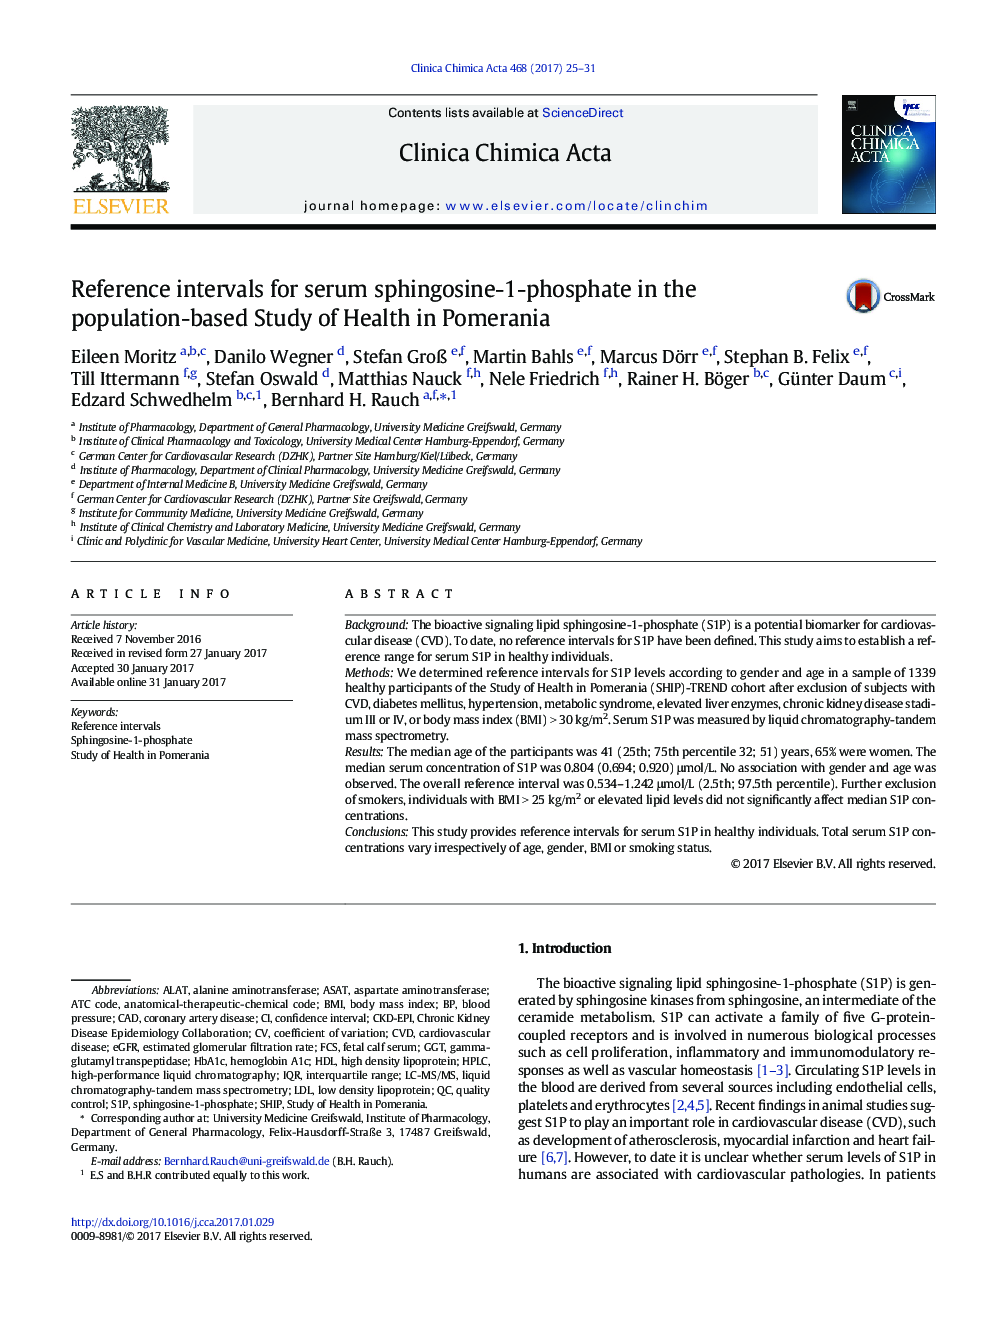 فواصل مرجع برای اسپینگوزین-1-فسفات سرم در تحقیقات جمعیتی در پومرنیا 